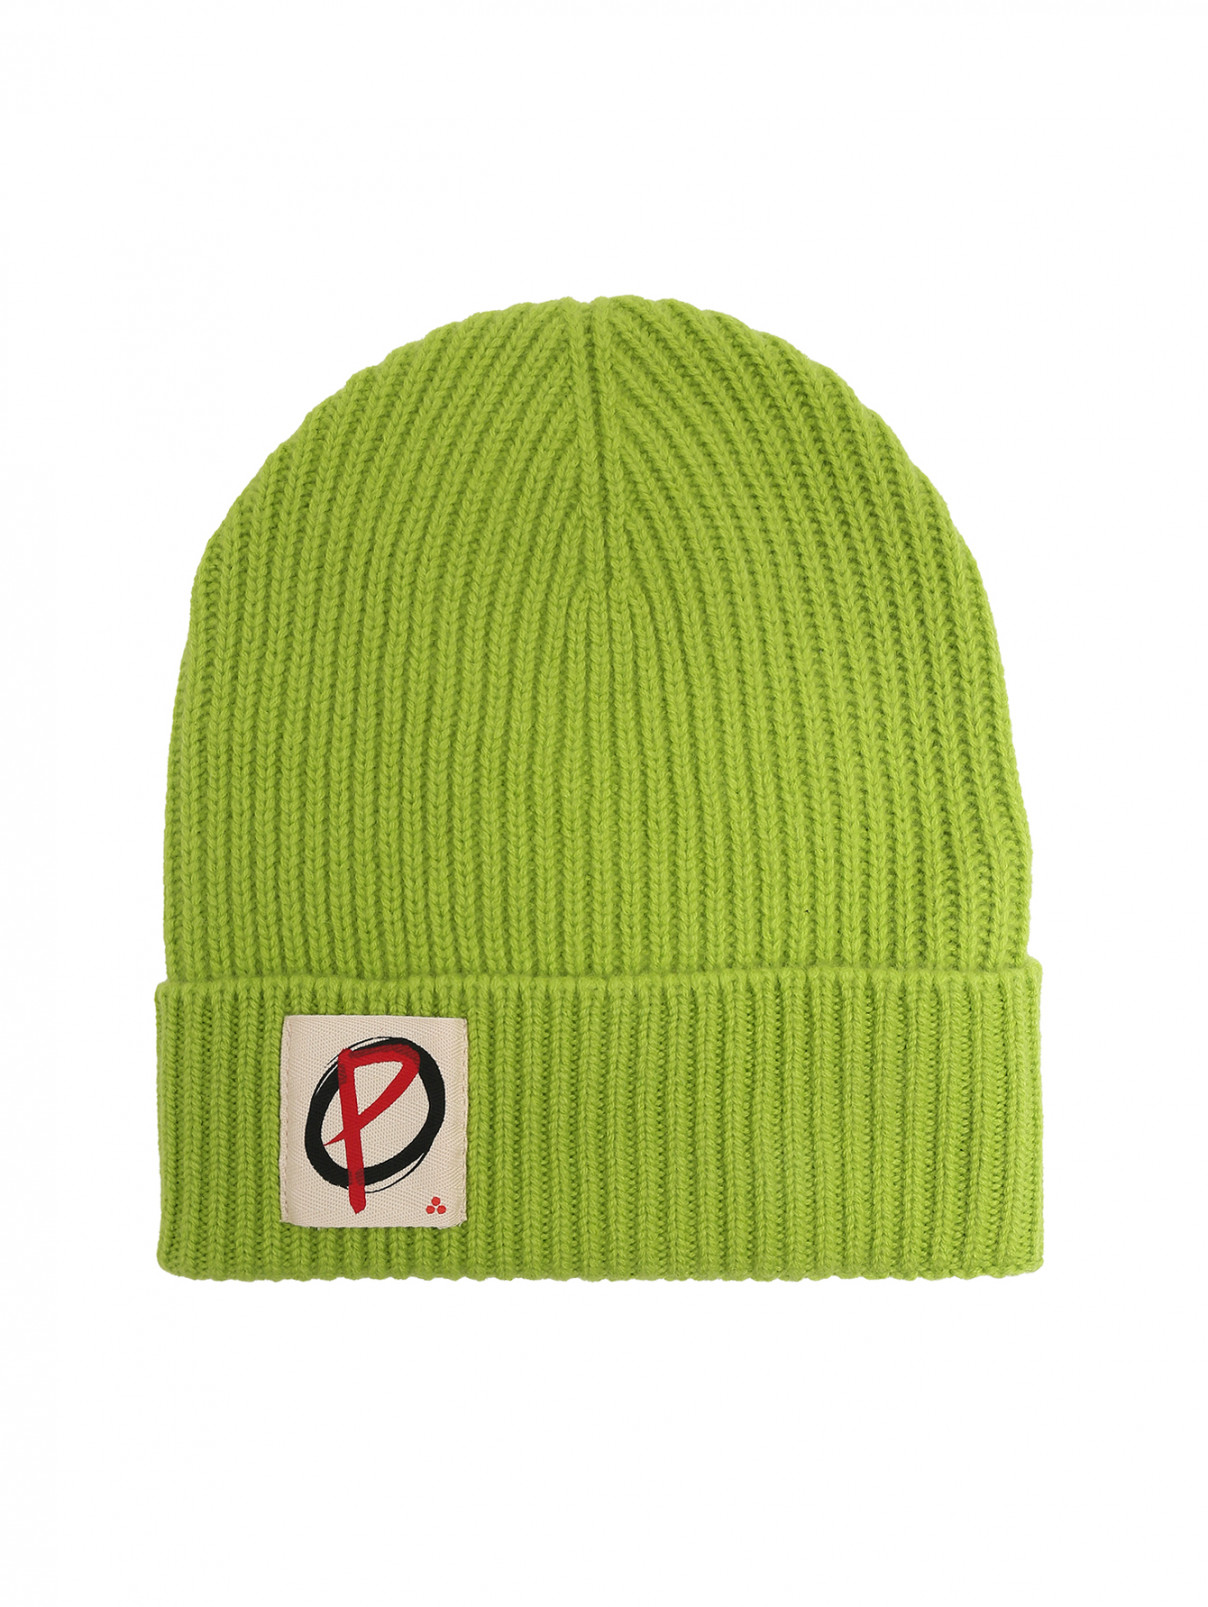 Однотонная шапка крупной вязки Peuterey  –  Общий вид  – Цвет:  Зеленый